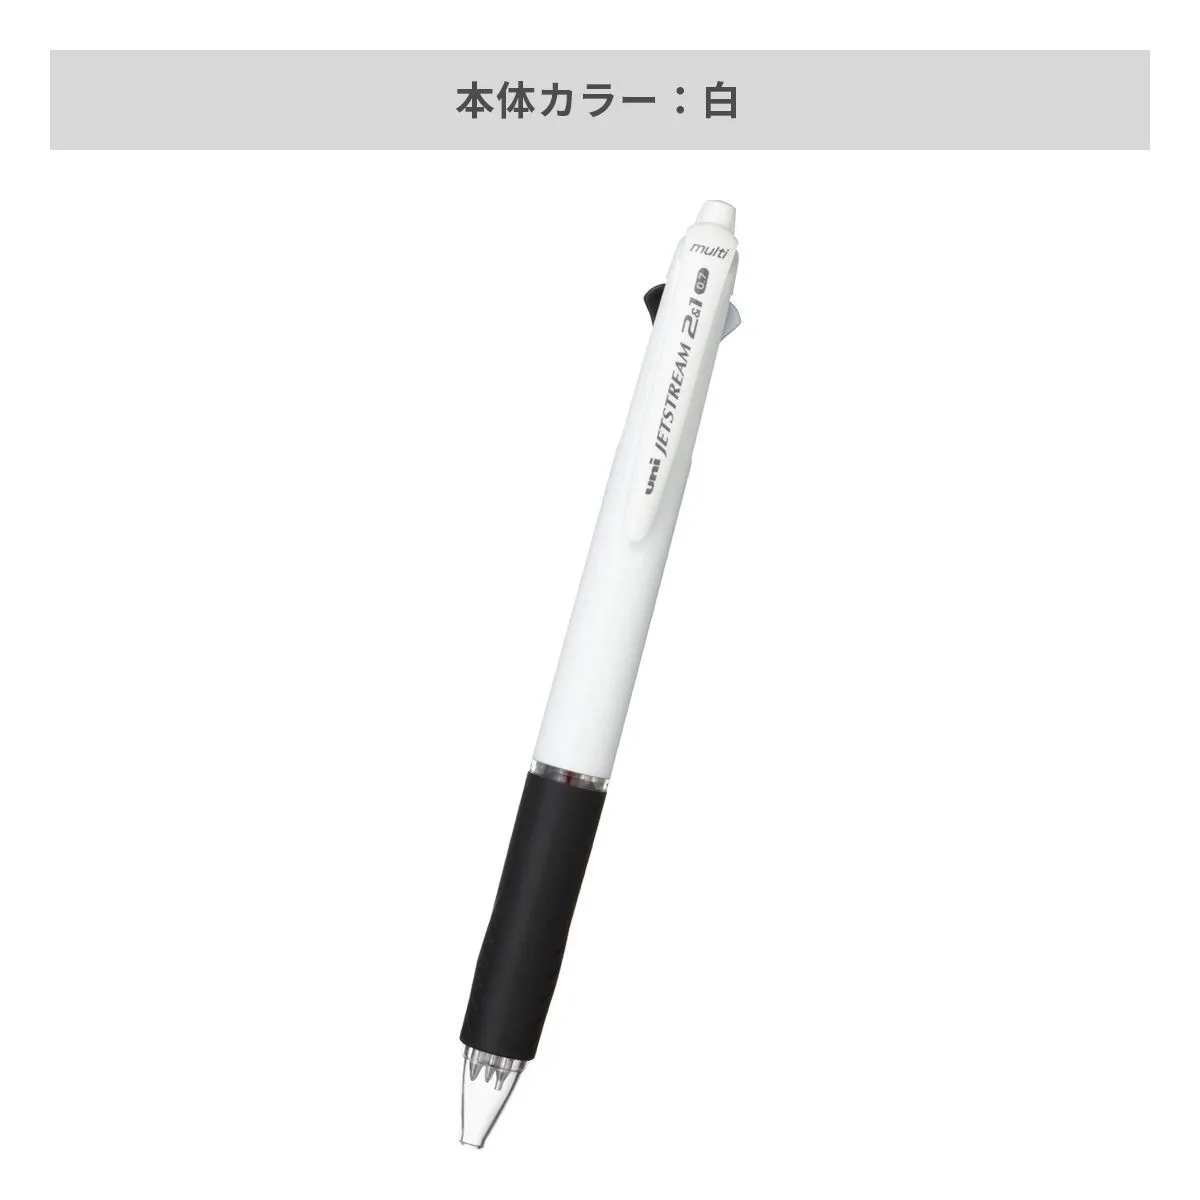 三菱鉛筆 ジェットストリーム 2&1多機能ペン 白軸 0.7mm 【多機能ペン / パッド印刷】